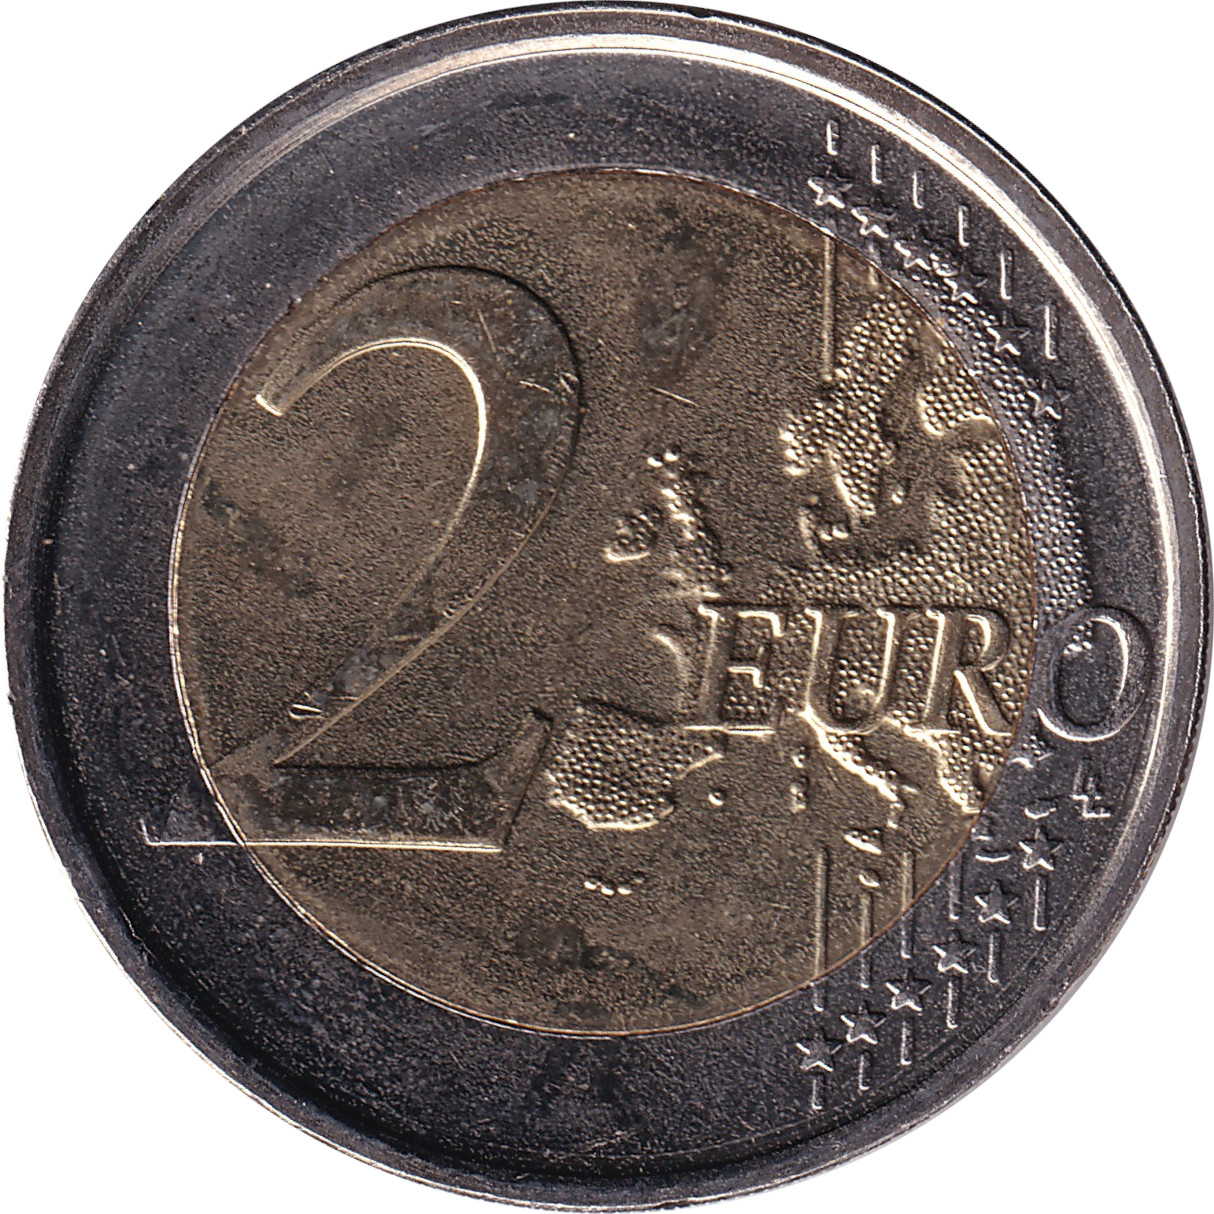 2 euro - Drapeau européen - Belgique